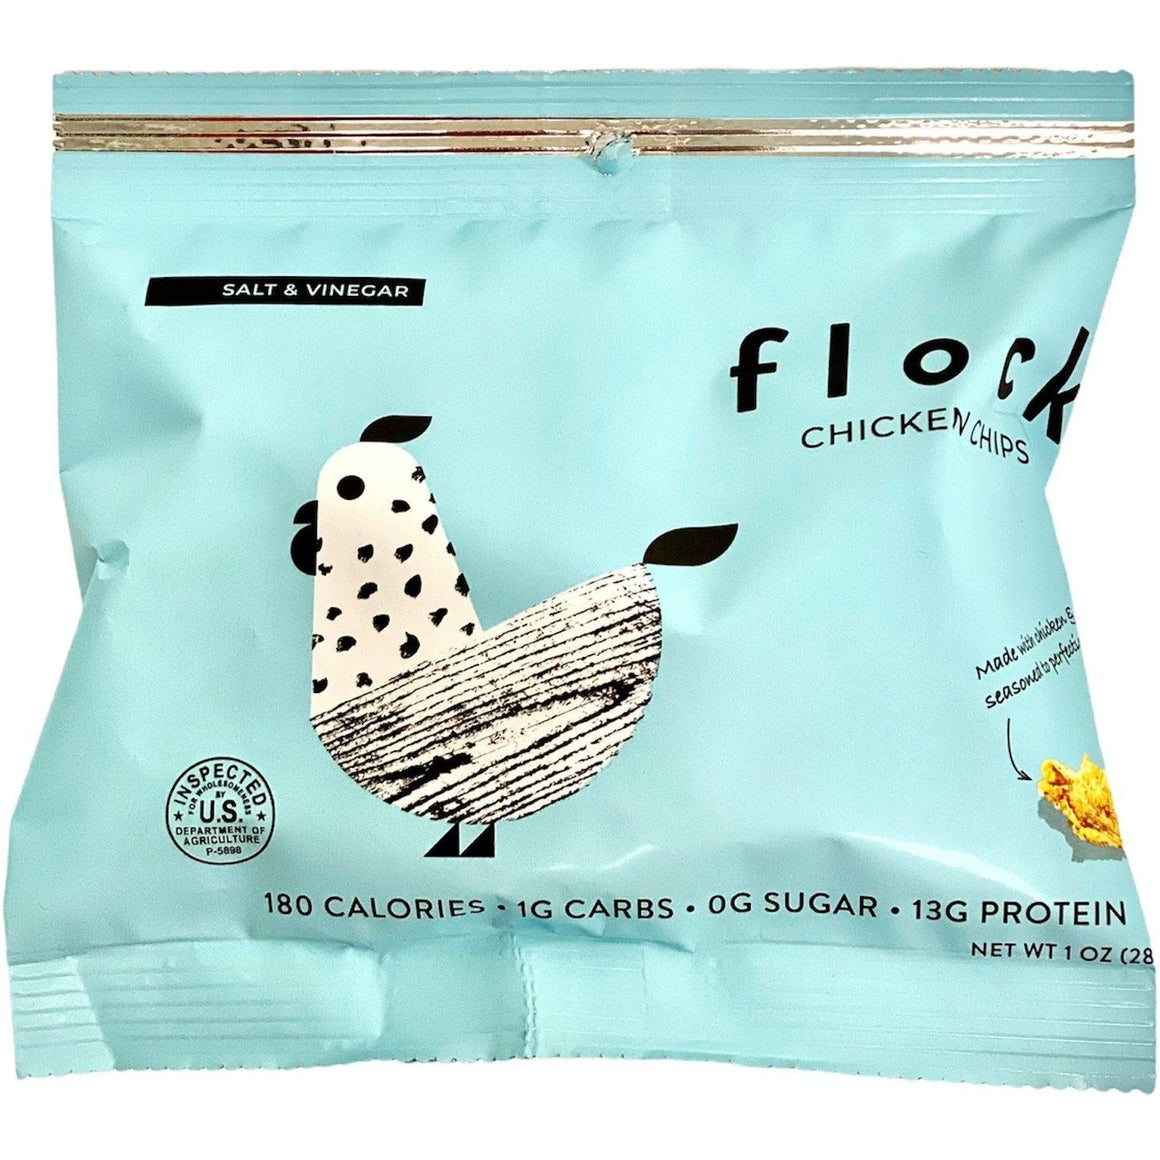 Flock - Chicken Chips - Salt and Vinegar - 1 oz